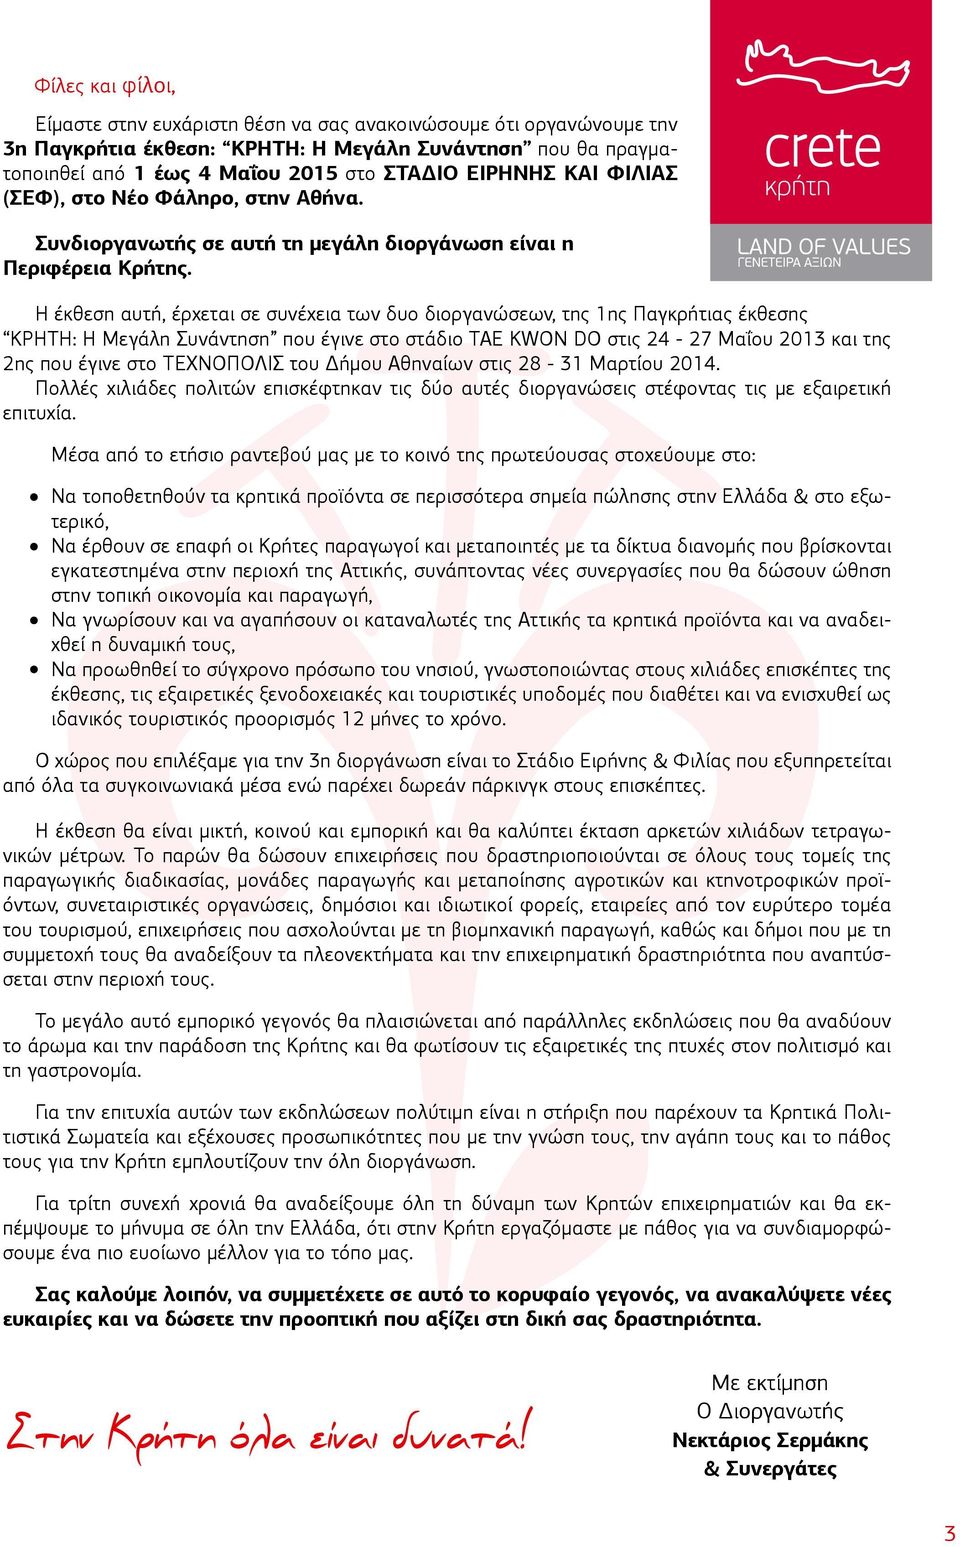 Η έκθεση αυτή, έρχεται σε συνέχεια των δυο διοργανώσεων, της 1ης Παγκρήτιας έκθεσης ΚΡΗΤΗ: Η Μεγάλη Συνάντηση που έγινε στο στάδιο TAE KWON DO στις 24-27 Μαΐου 2013 και της 2ης που έγινε στο